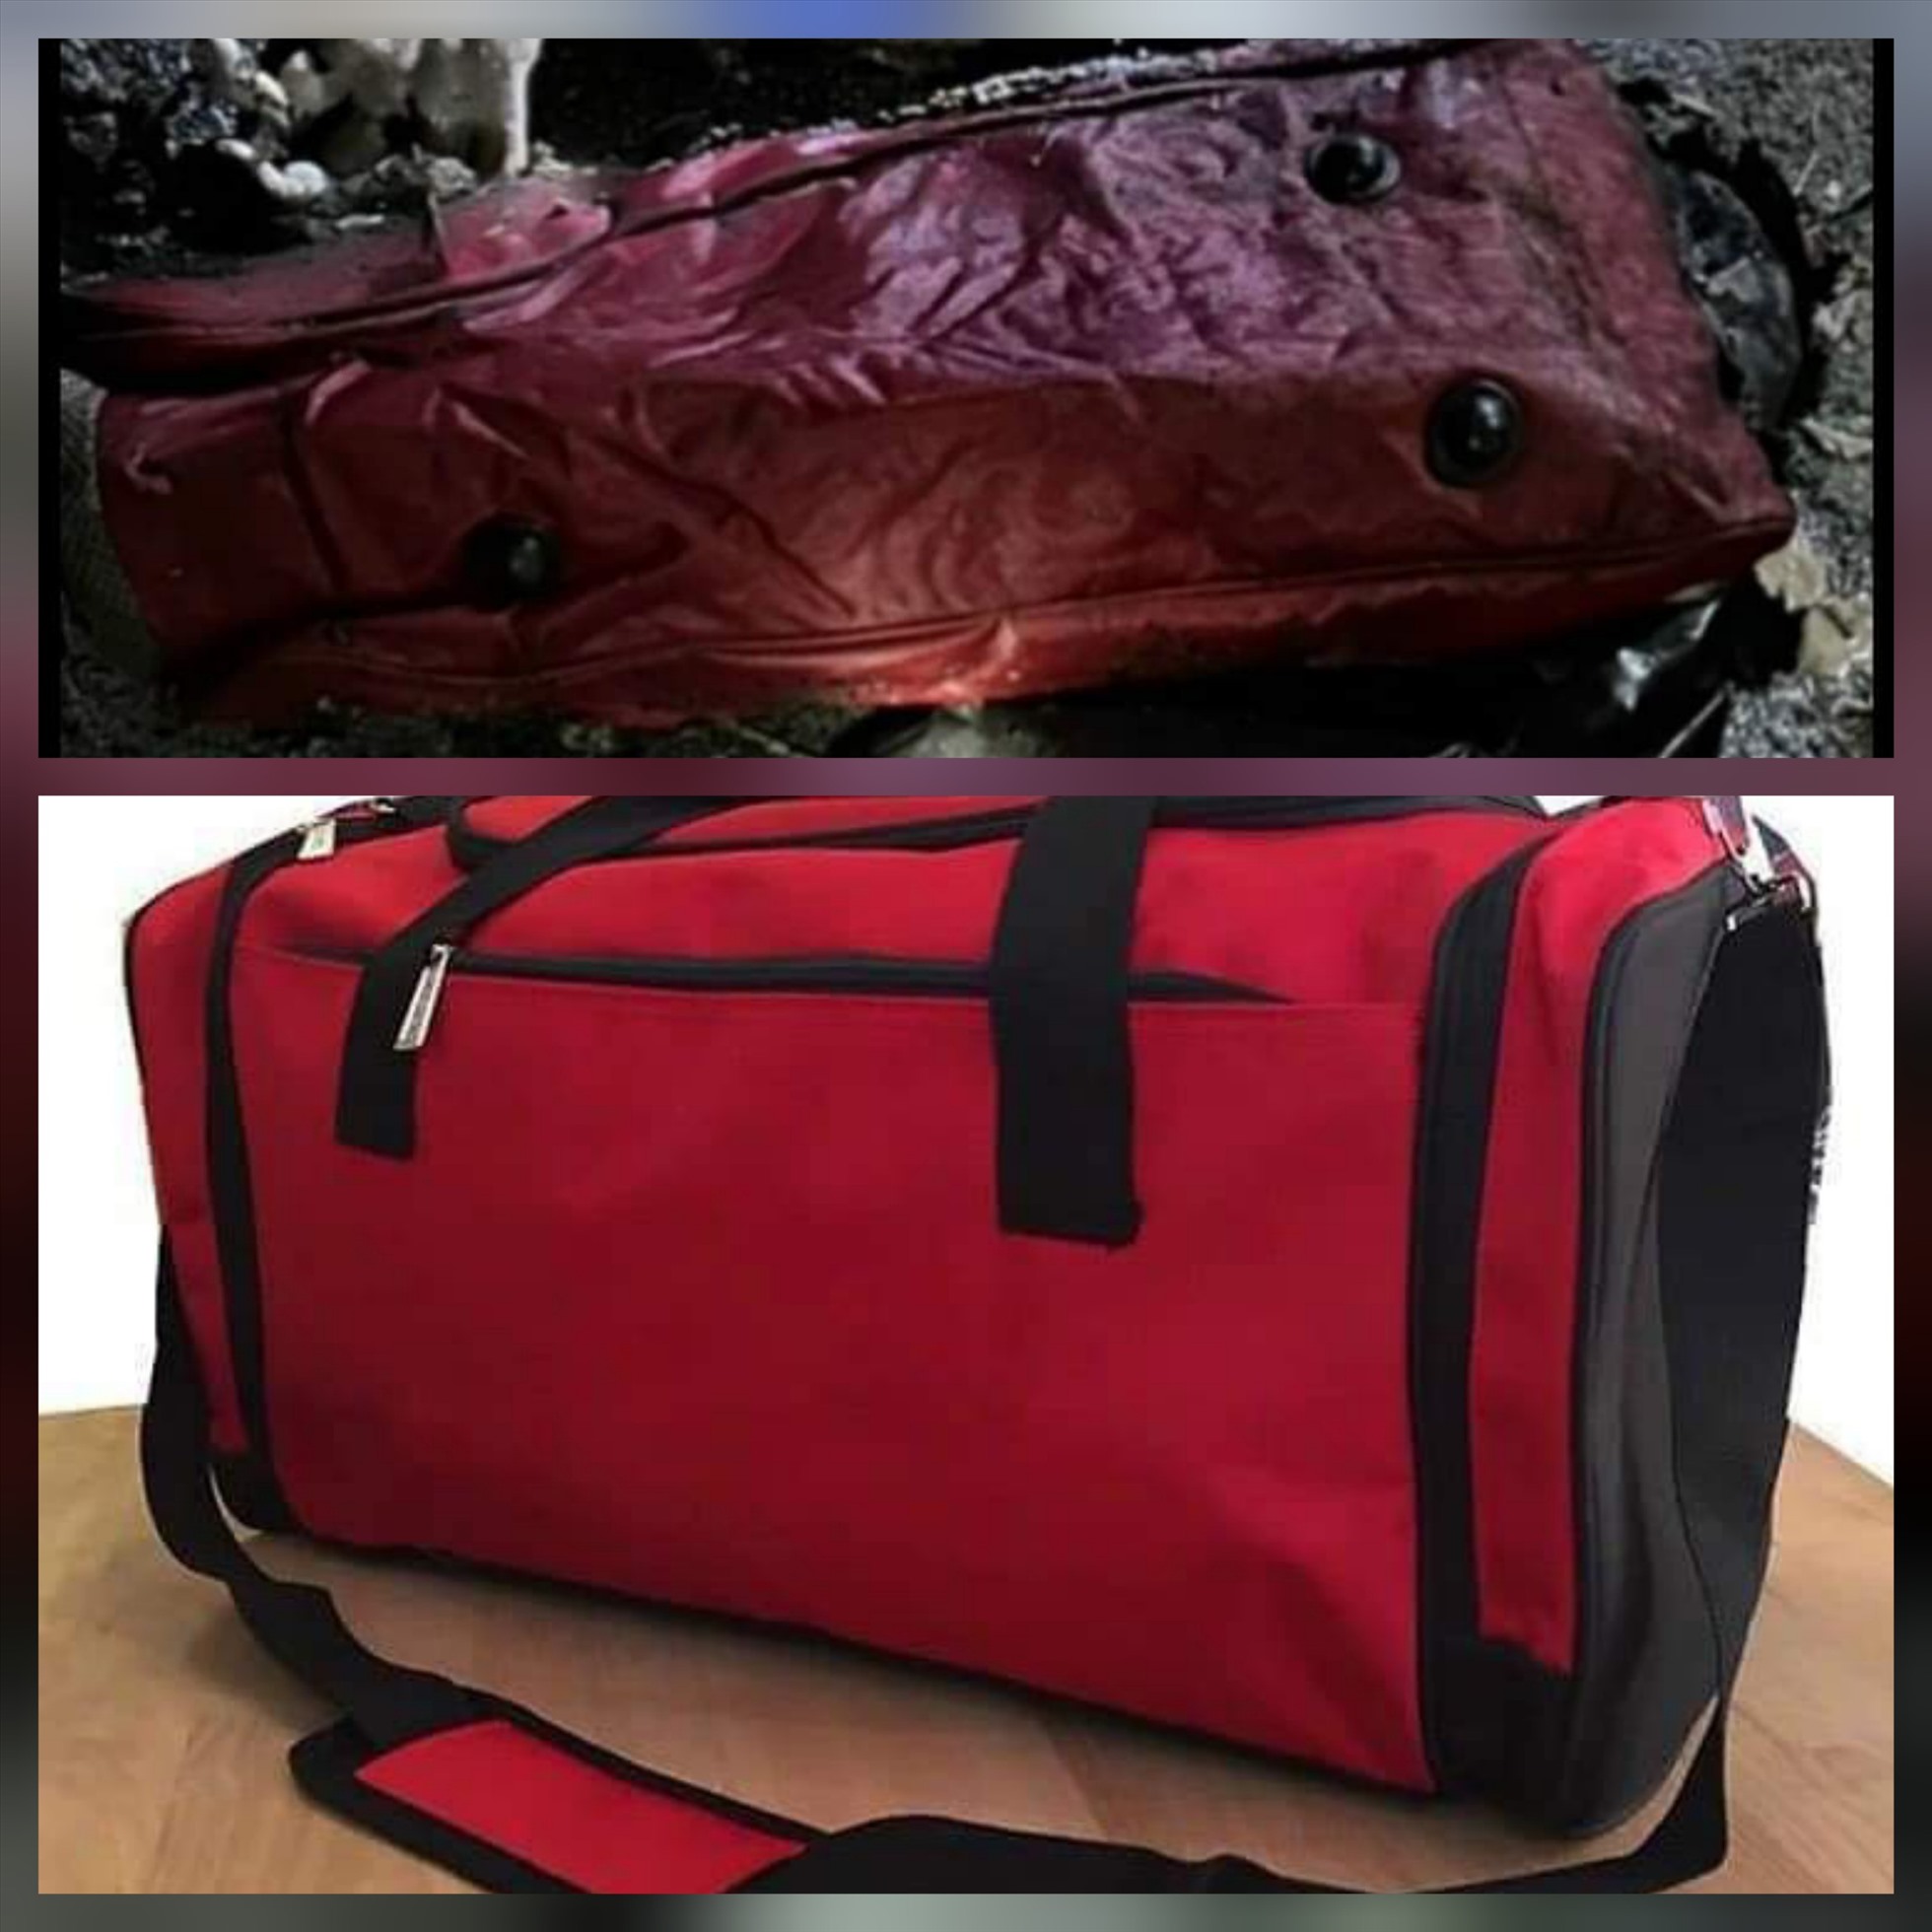 Túi xách đựng một phần thi thể bị cháy sém và túi xách mới tương tự công an cung cấp. Ảnh: CACC